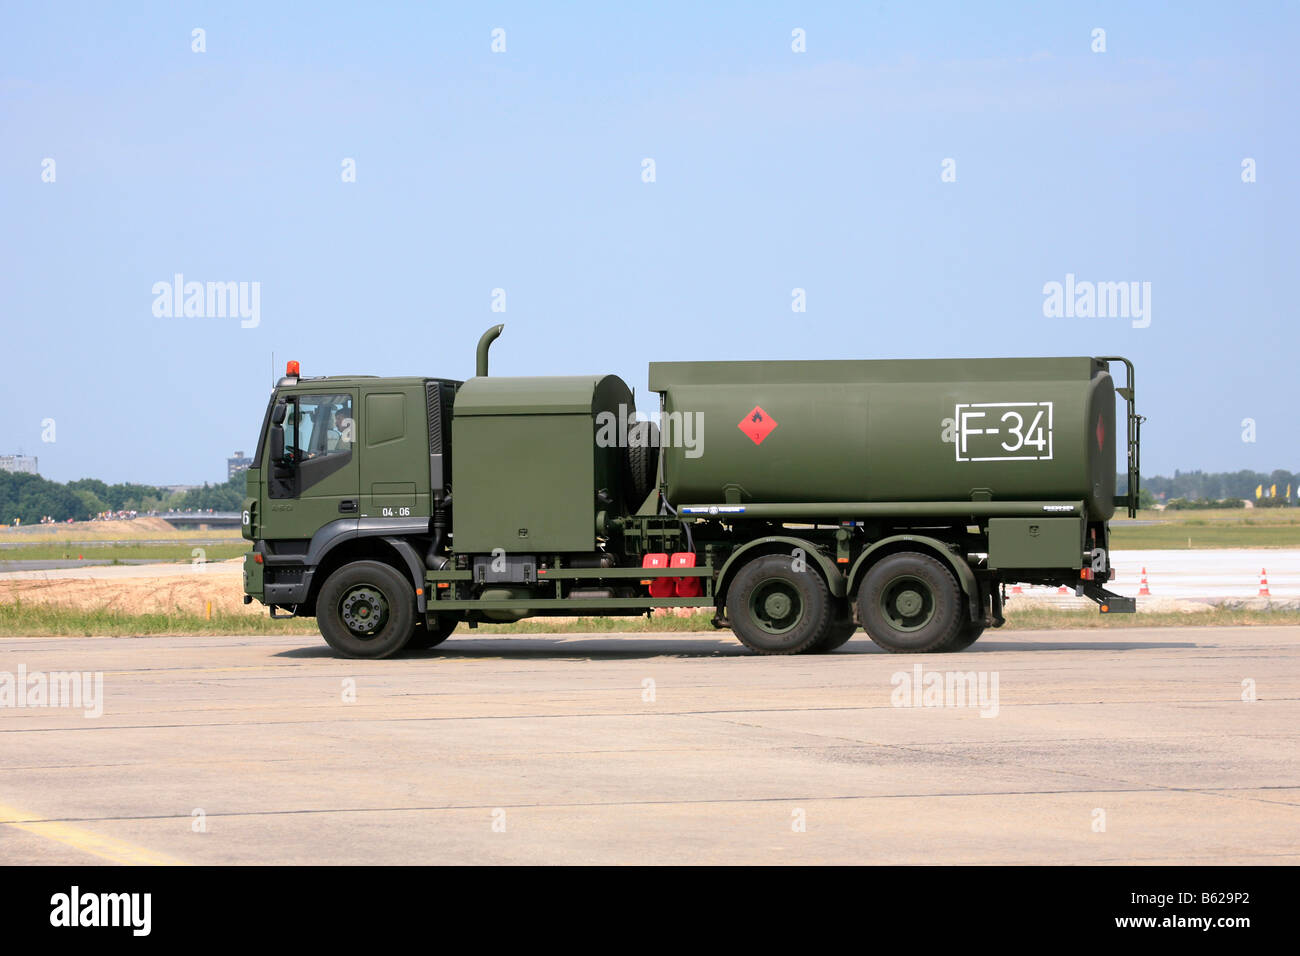 Tanker militaire, armée allemande, véhicule de maintenance pour le ravitaillement des avions militaires Banque D'Images